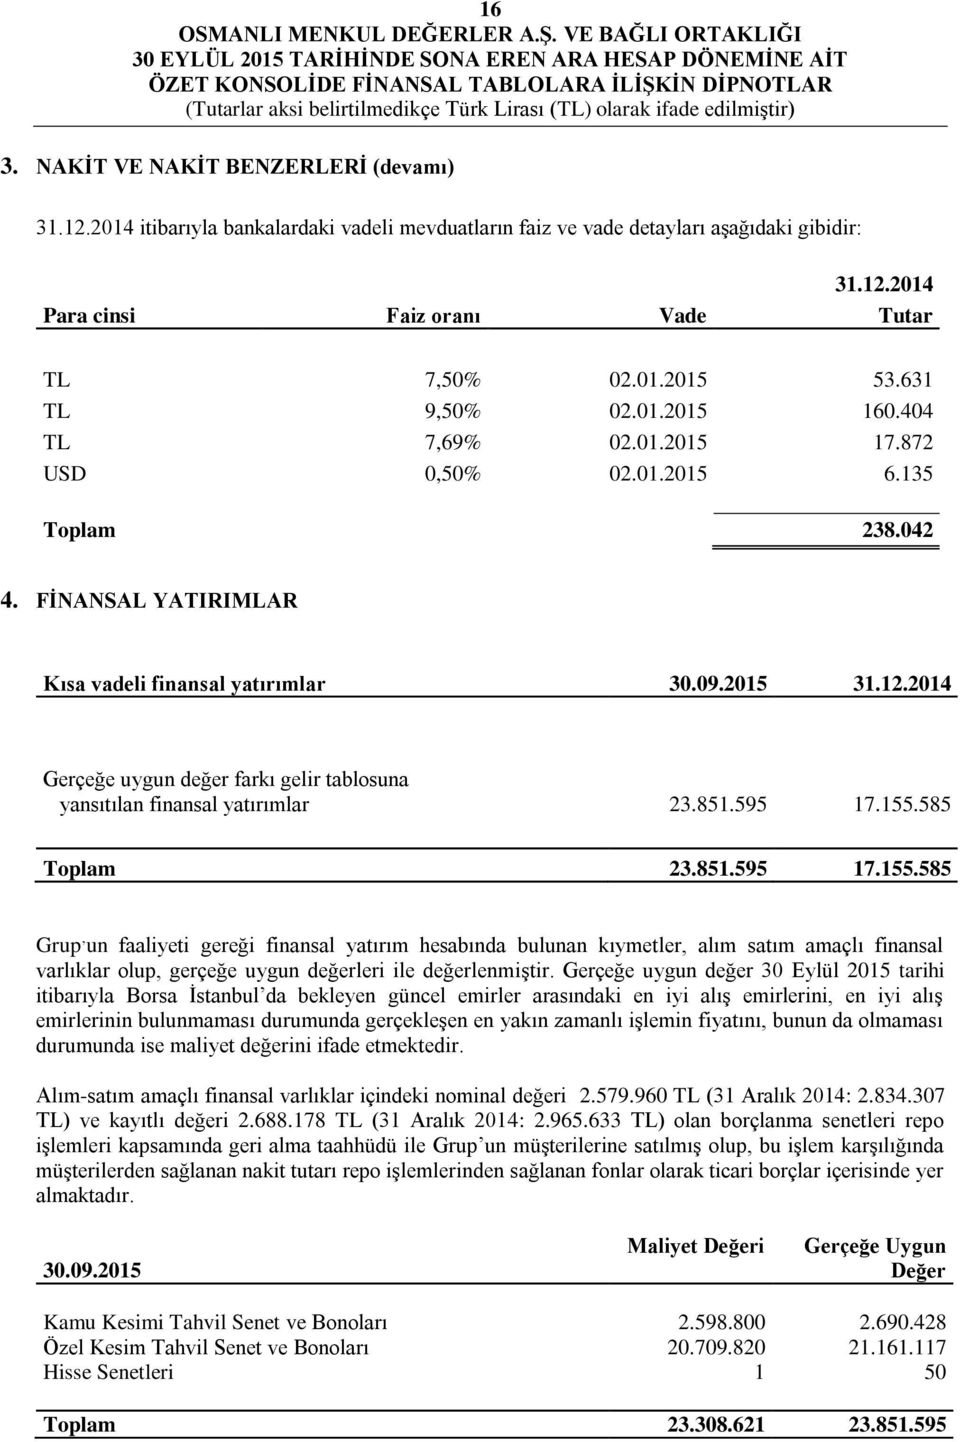 2014 Gerçeğe uygun değer farkı gelir tablosuna yansıtılan finansal yatırımlar 23.851.595 17.155.